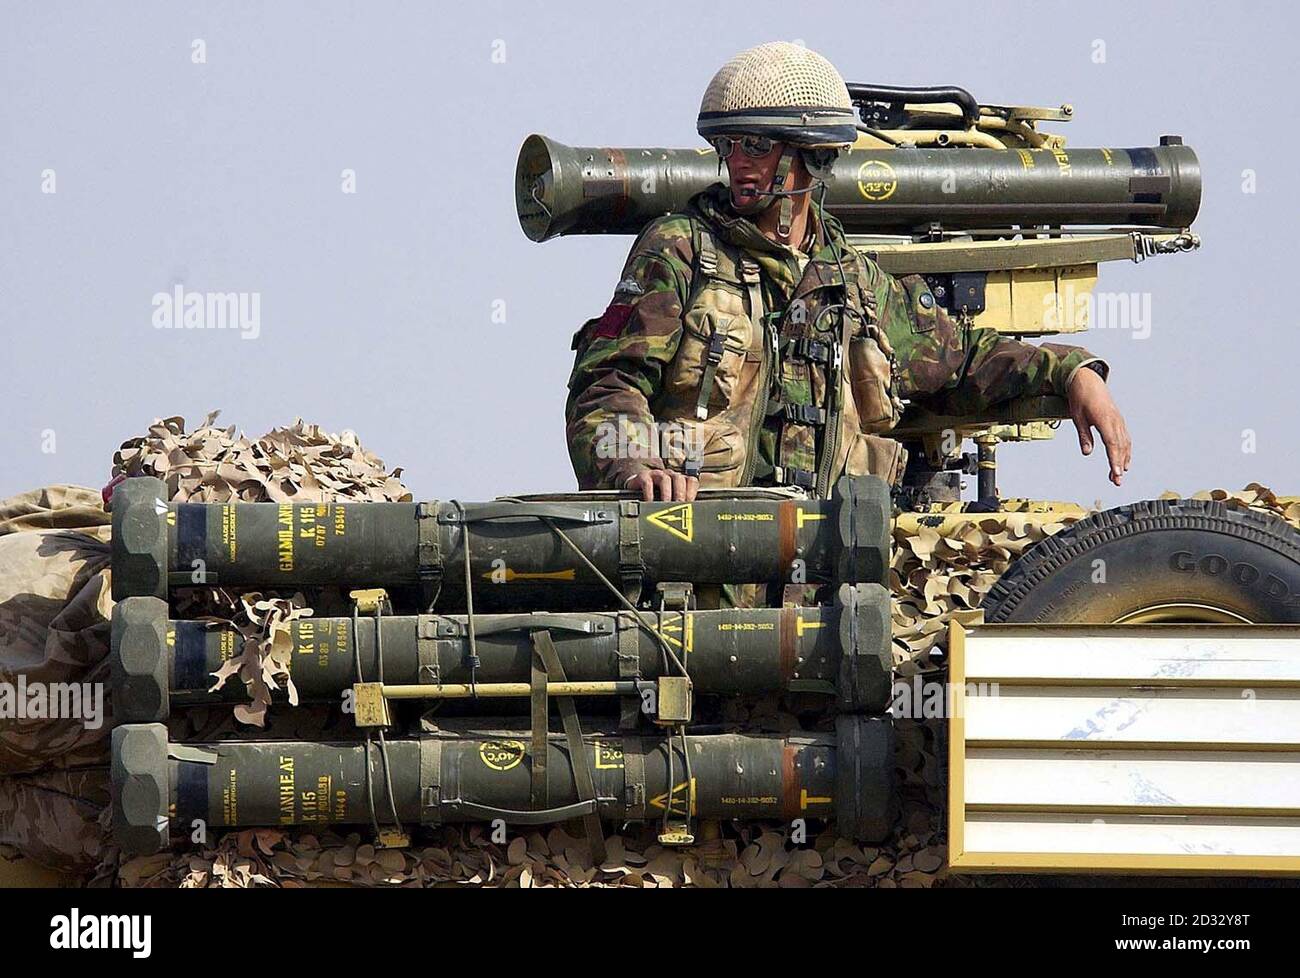 Bild zur Verfügung gestellt Donnerstag 3. April 2003 von einem Soldaten der 3 para Brigade wartet neben seinem Anti-Tank-Raketenwerfer. Stockfoto